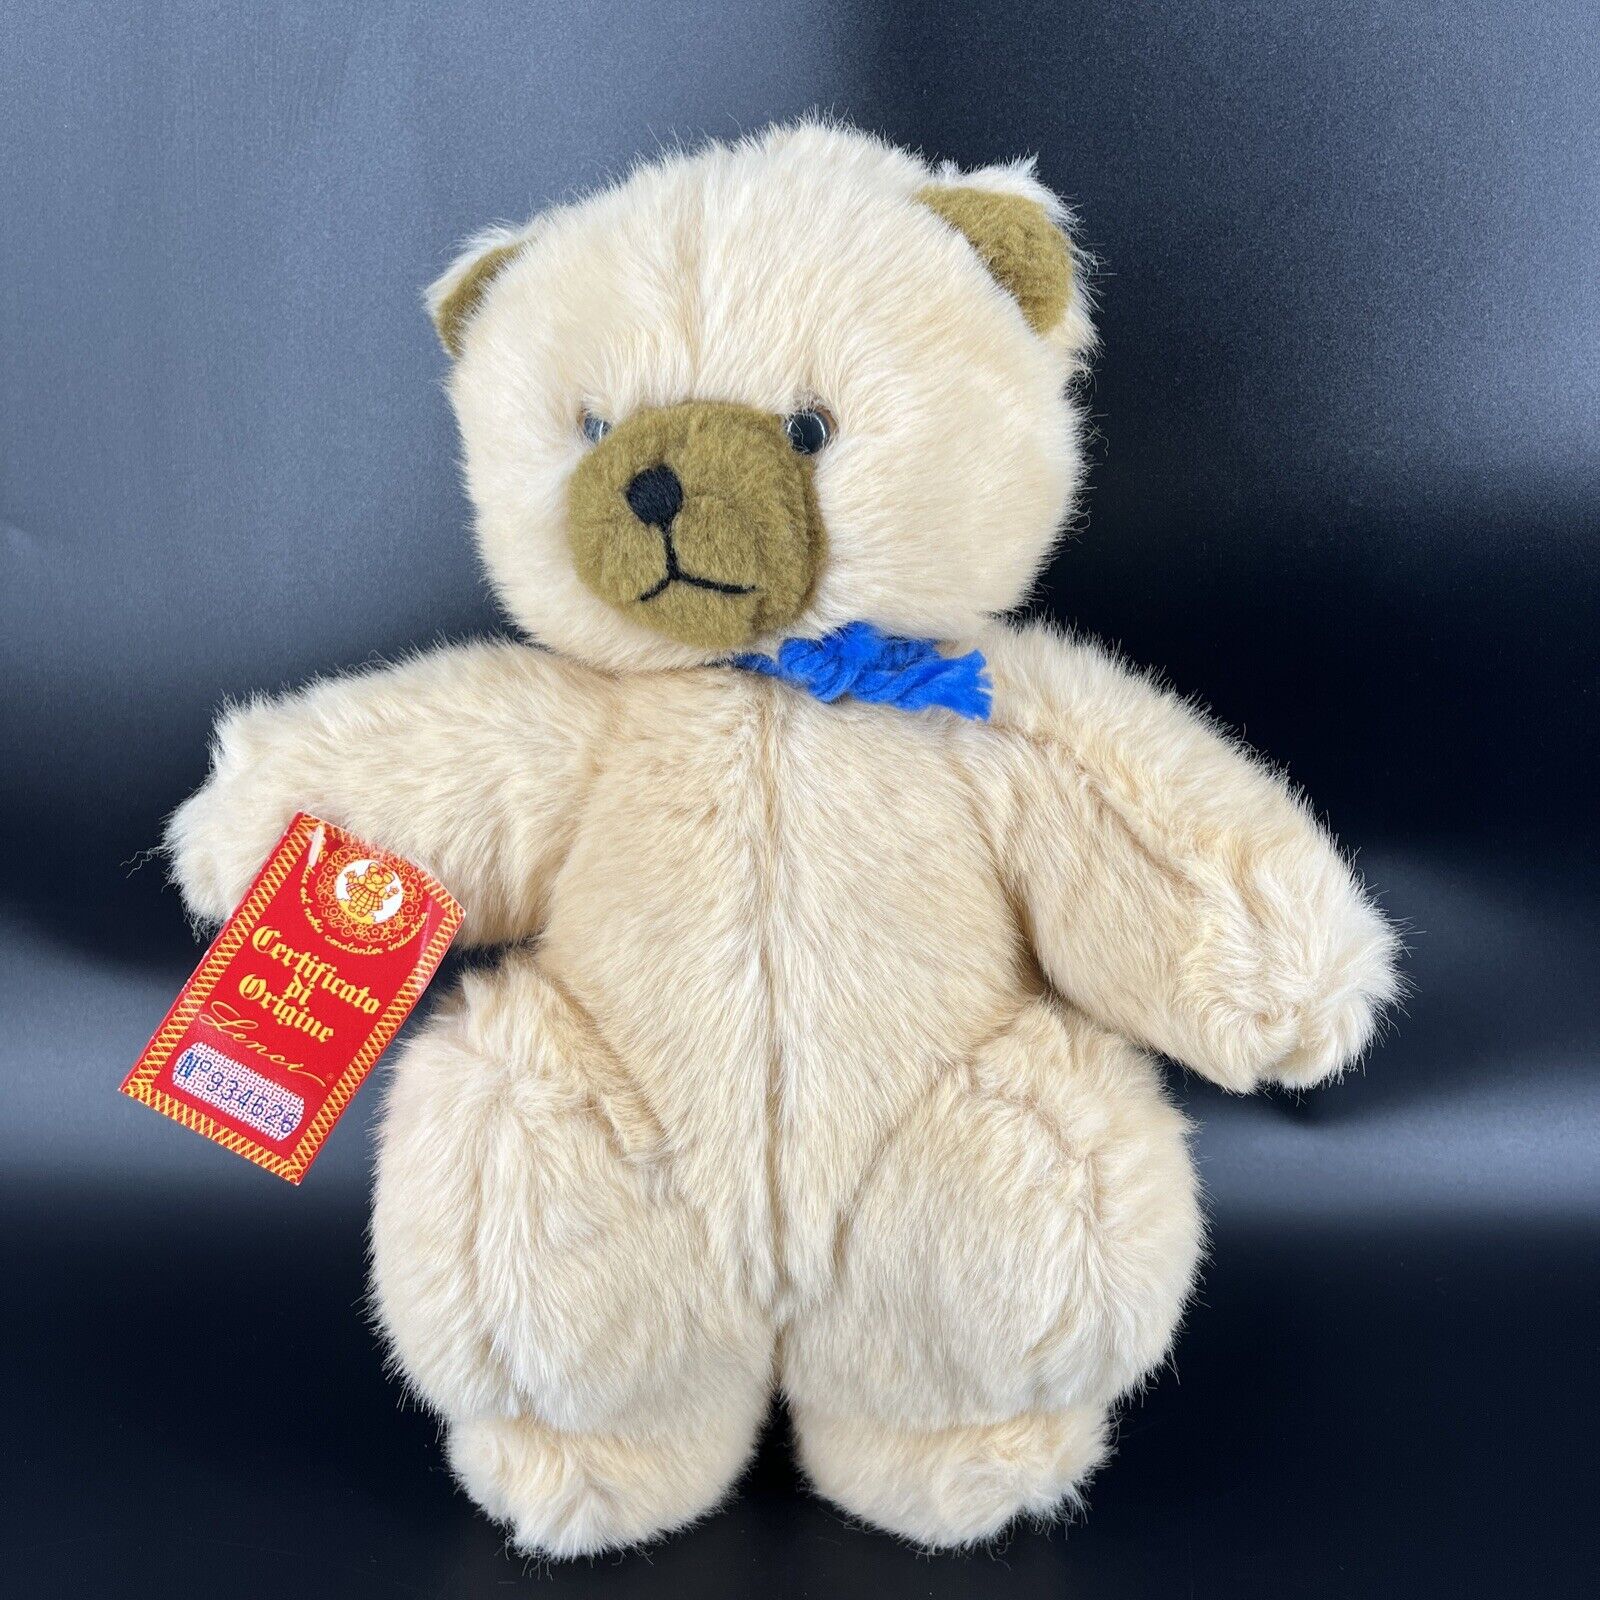 Vintage Lenci Plush Off White Teddy Bear Torino Italy Vintage Stuffed Animal Toy